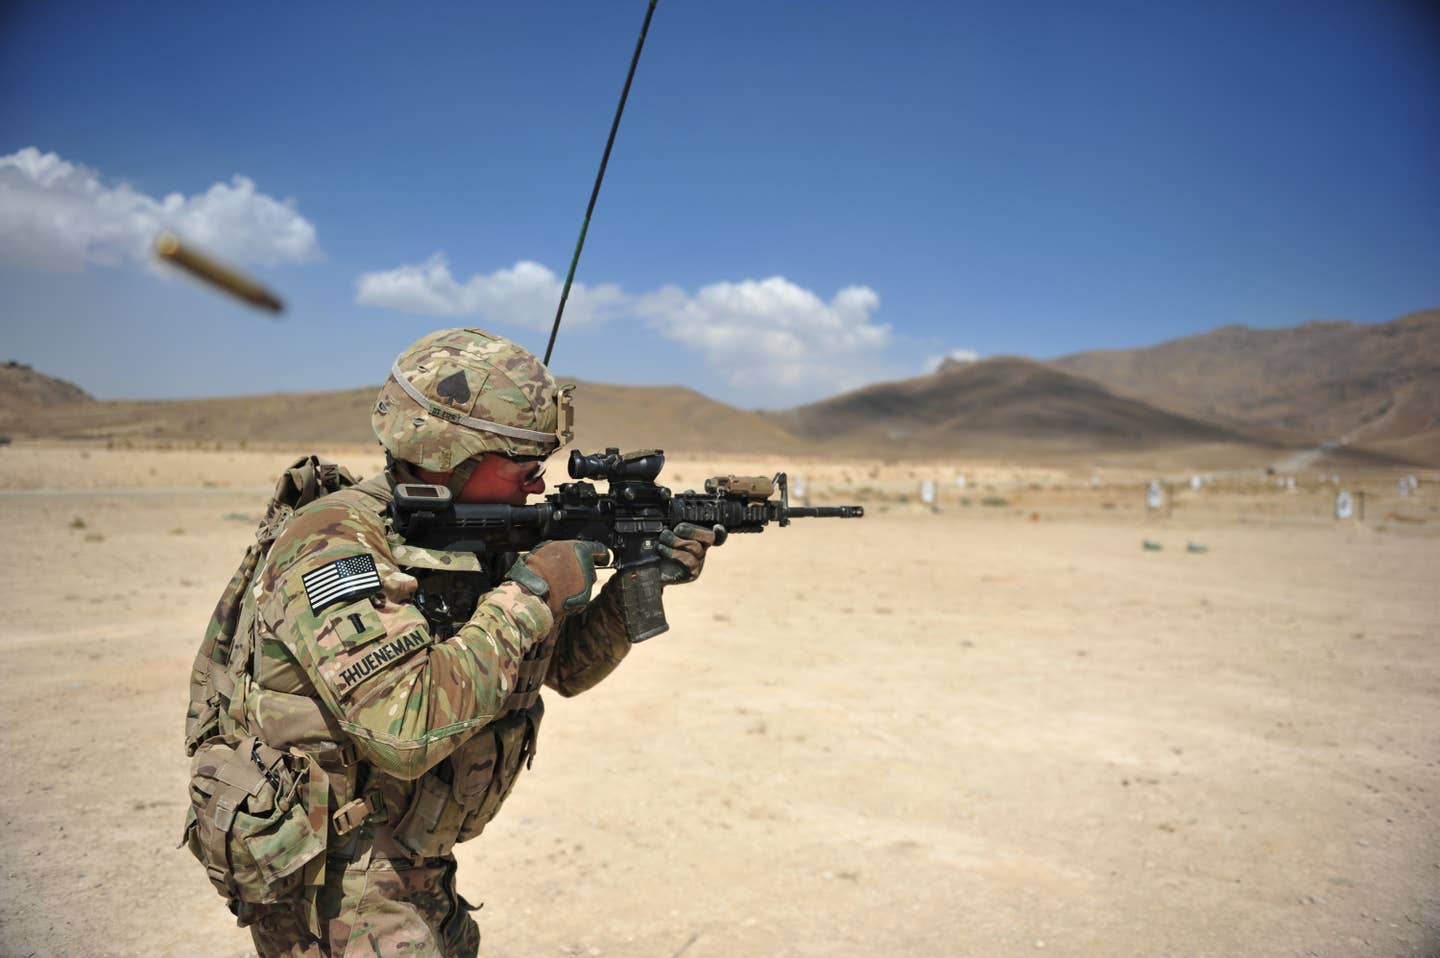 A soldier fires an M4A1